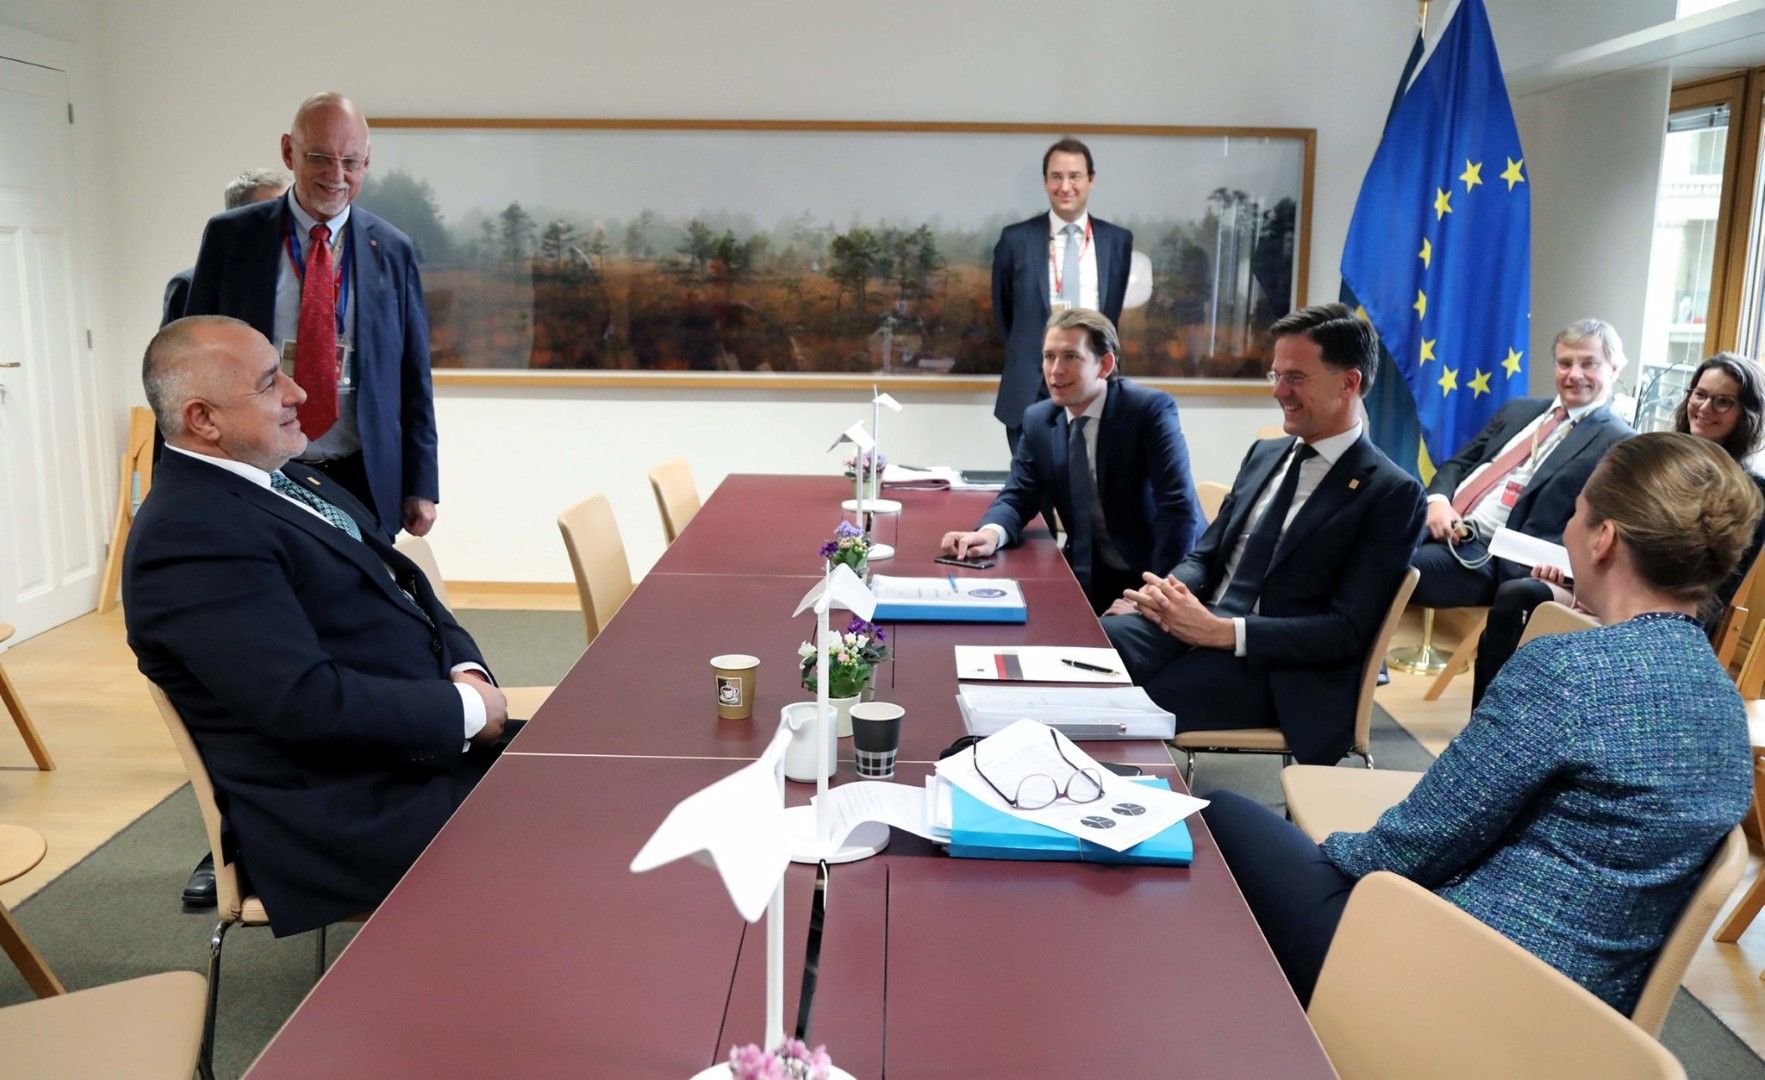 Бойко Борисов от едната страна на масата - от другата са  премиерите Мете Фредериксен, Стефан Льовен, Марк Рюте и канцлера Себастиан Курц